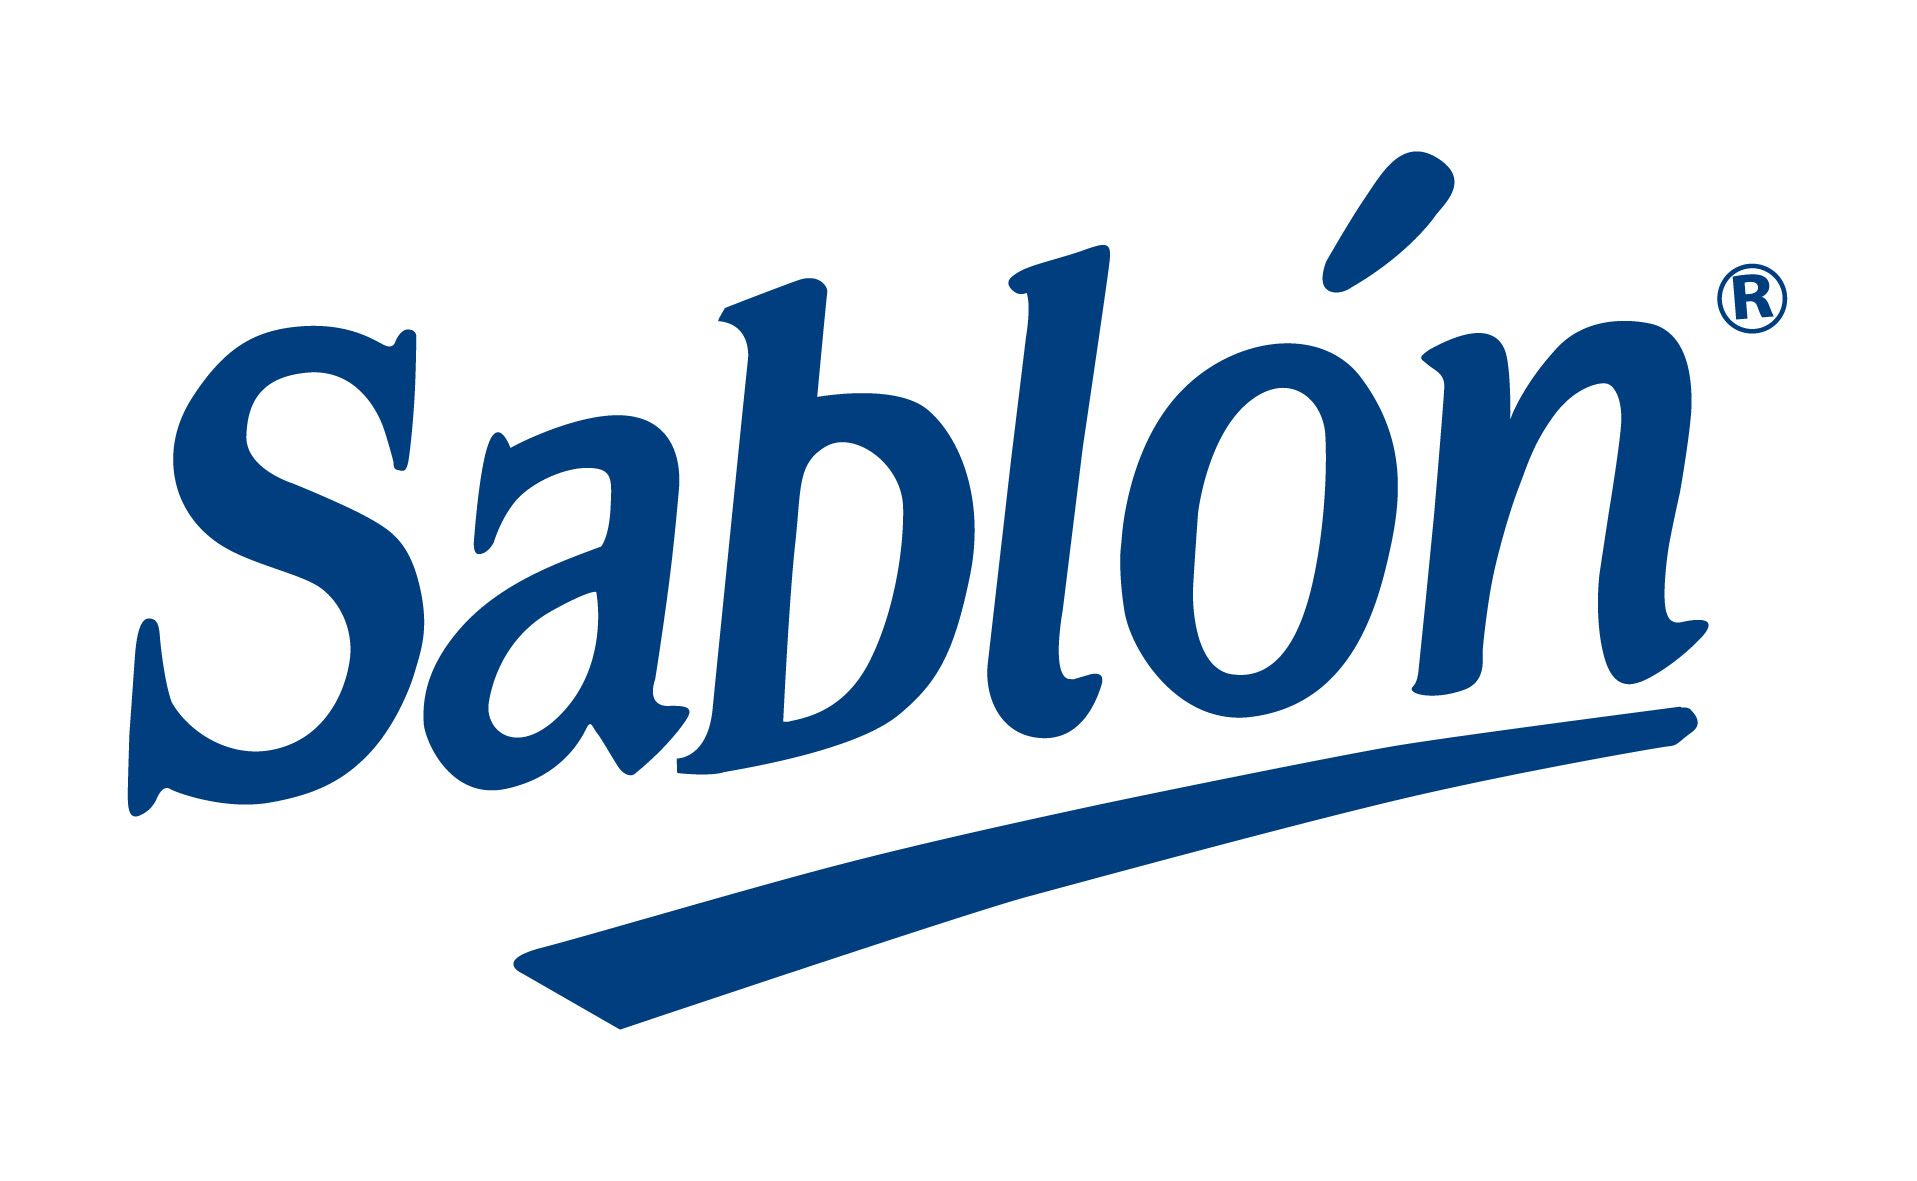 Sablón